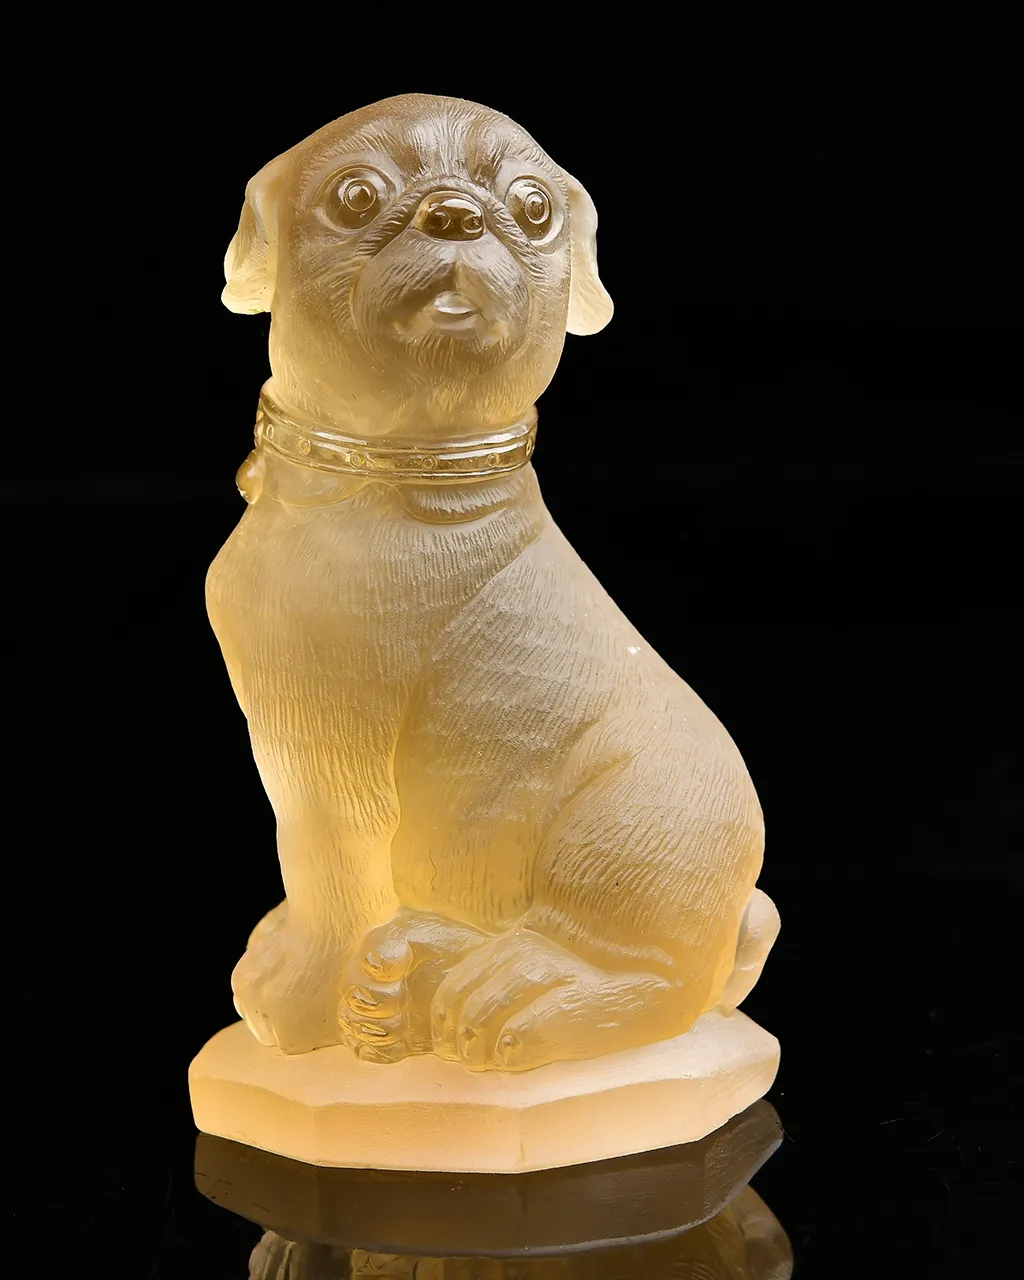 招财旺财神器，天然黄水晶旺财狗摆件  狗是忠诚和勇敢的象征，被视为吉祥的动物，黄水晶招财进财，手工雕刻，雕工栩栩如生，实物非常漂亮 112*64*49mm，重403g